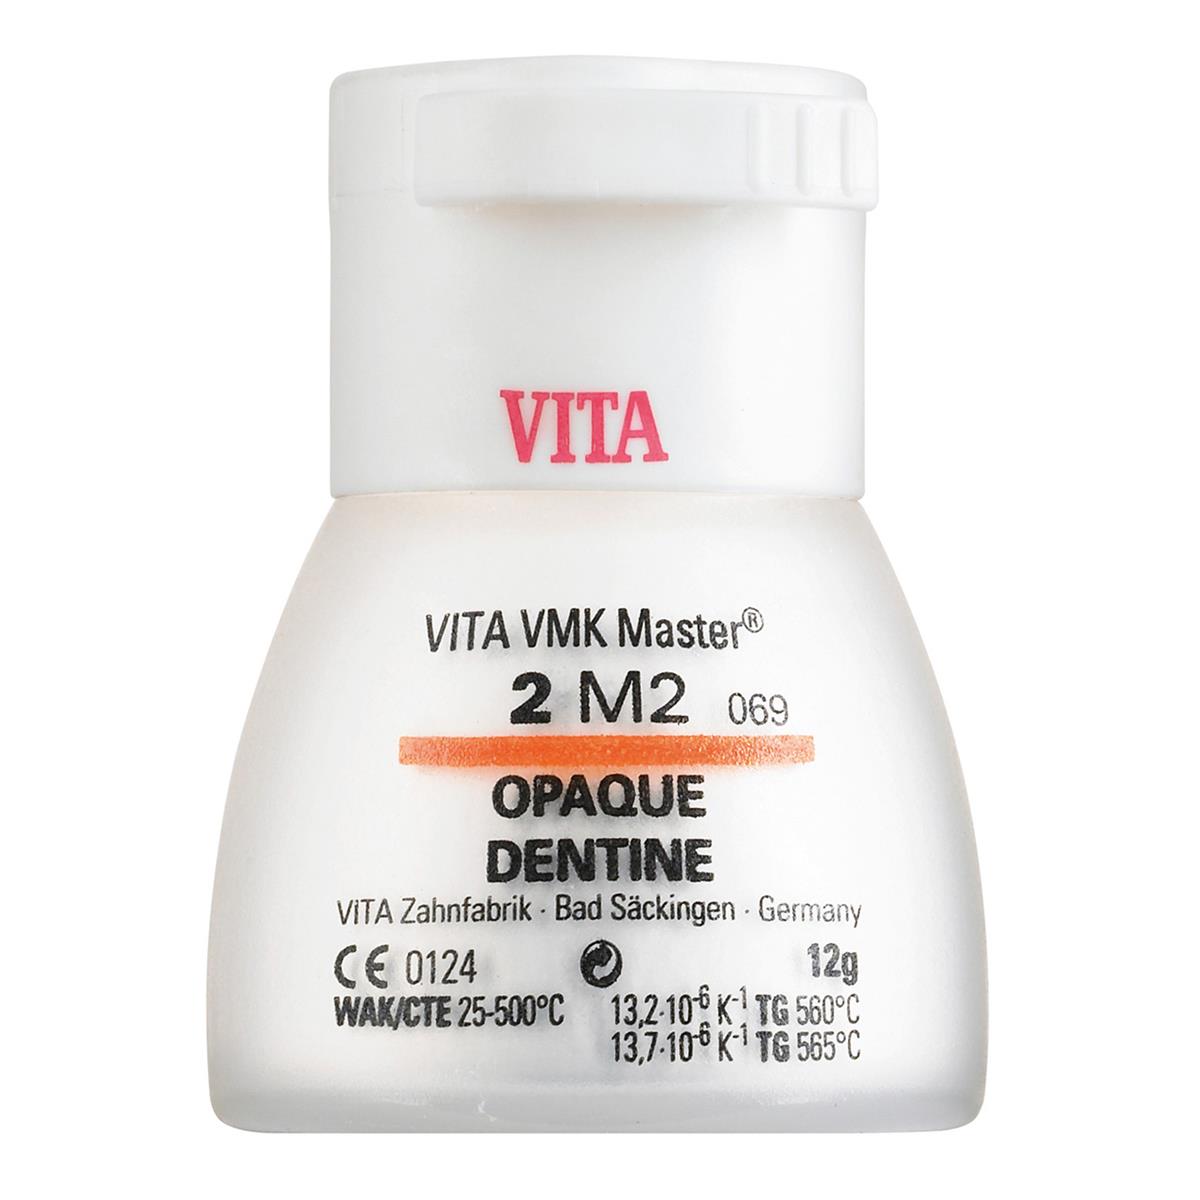 Vita VMK Master Opaque Dentine 2L2.5 50g